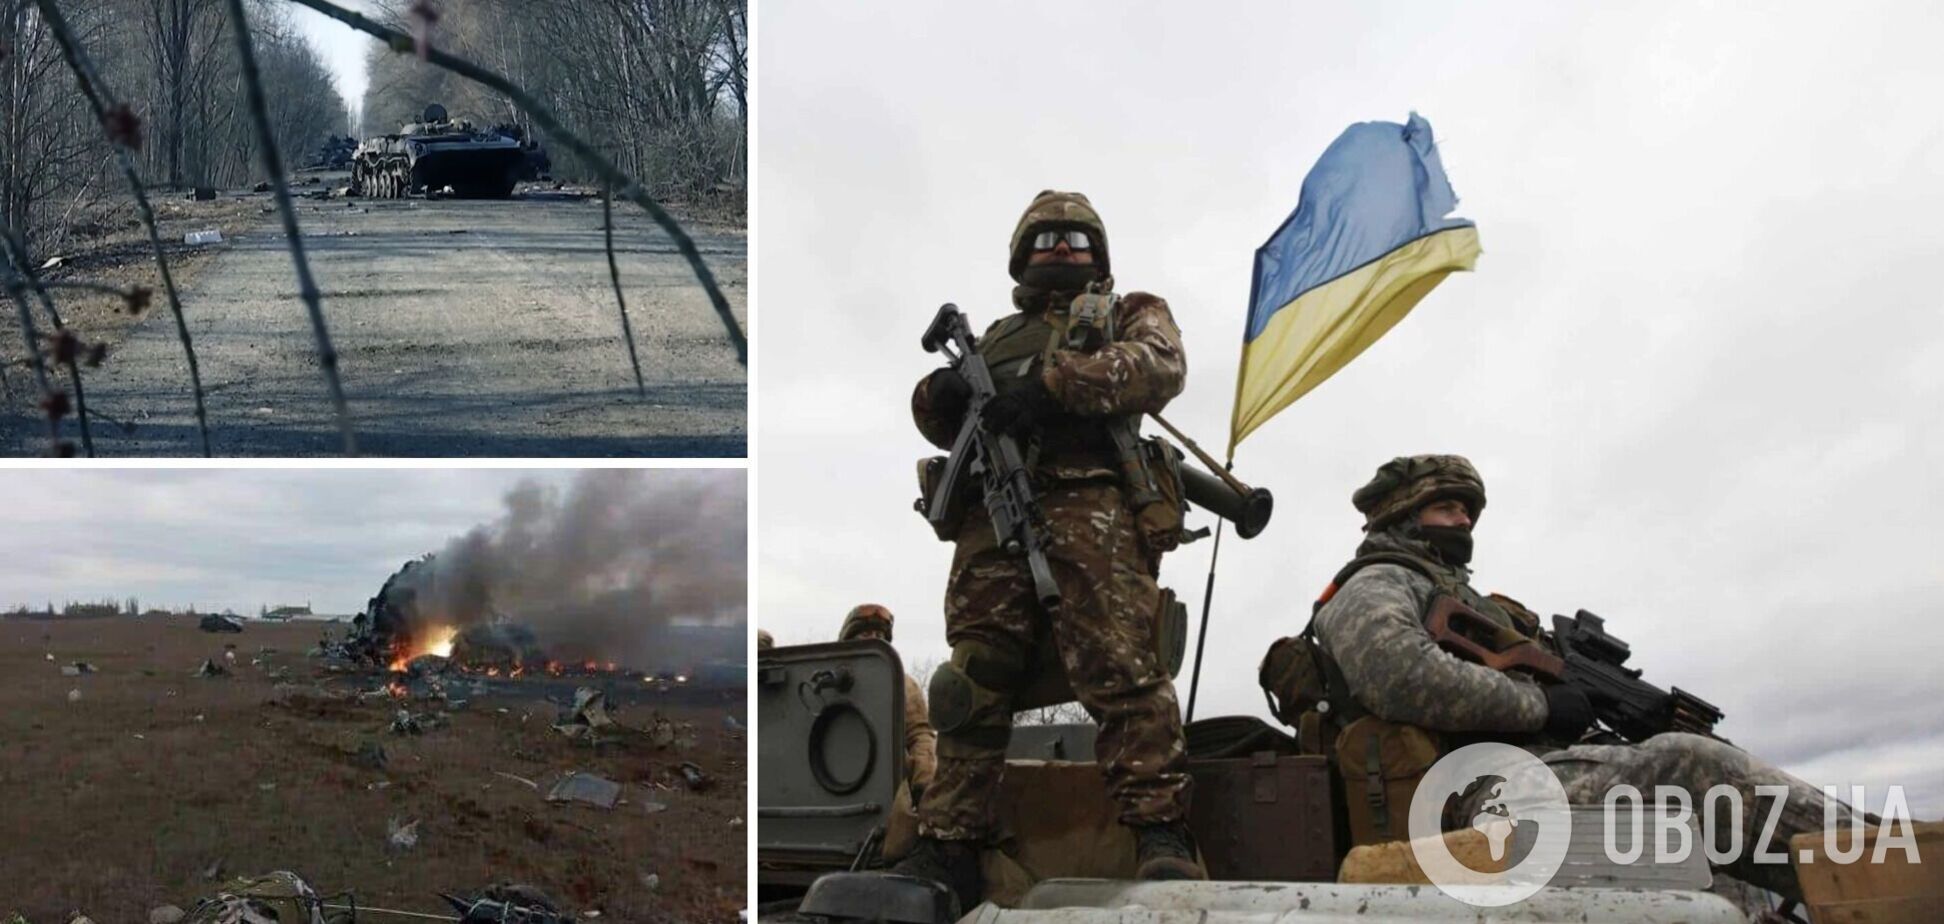 Росгвардія в Україні втратила значну частину техніки та озброєння, у Кремлі розпочали репресії через провали окупантів – Генштаб ЗСУ